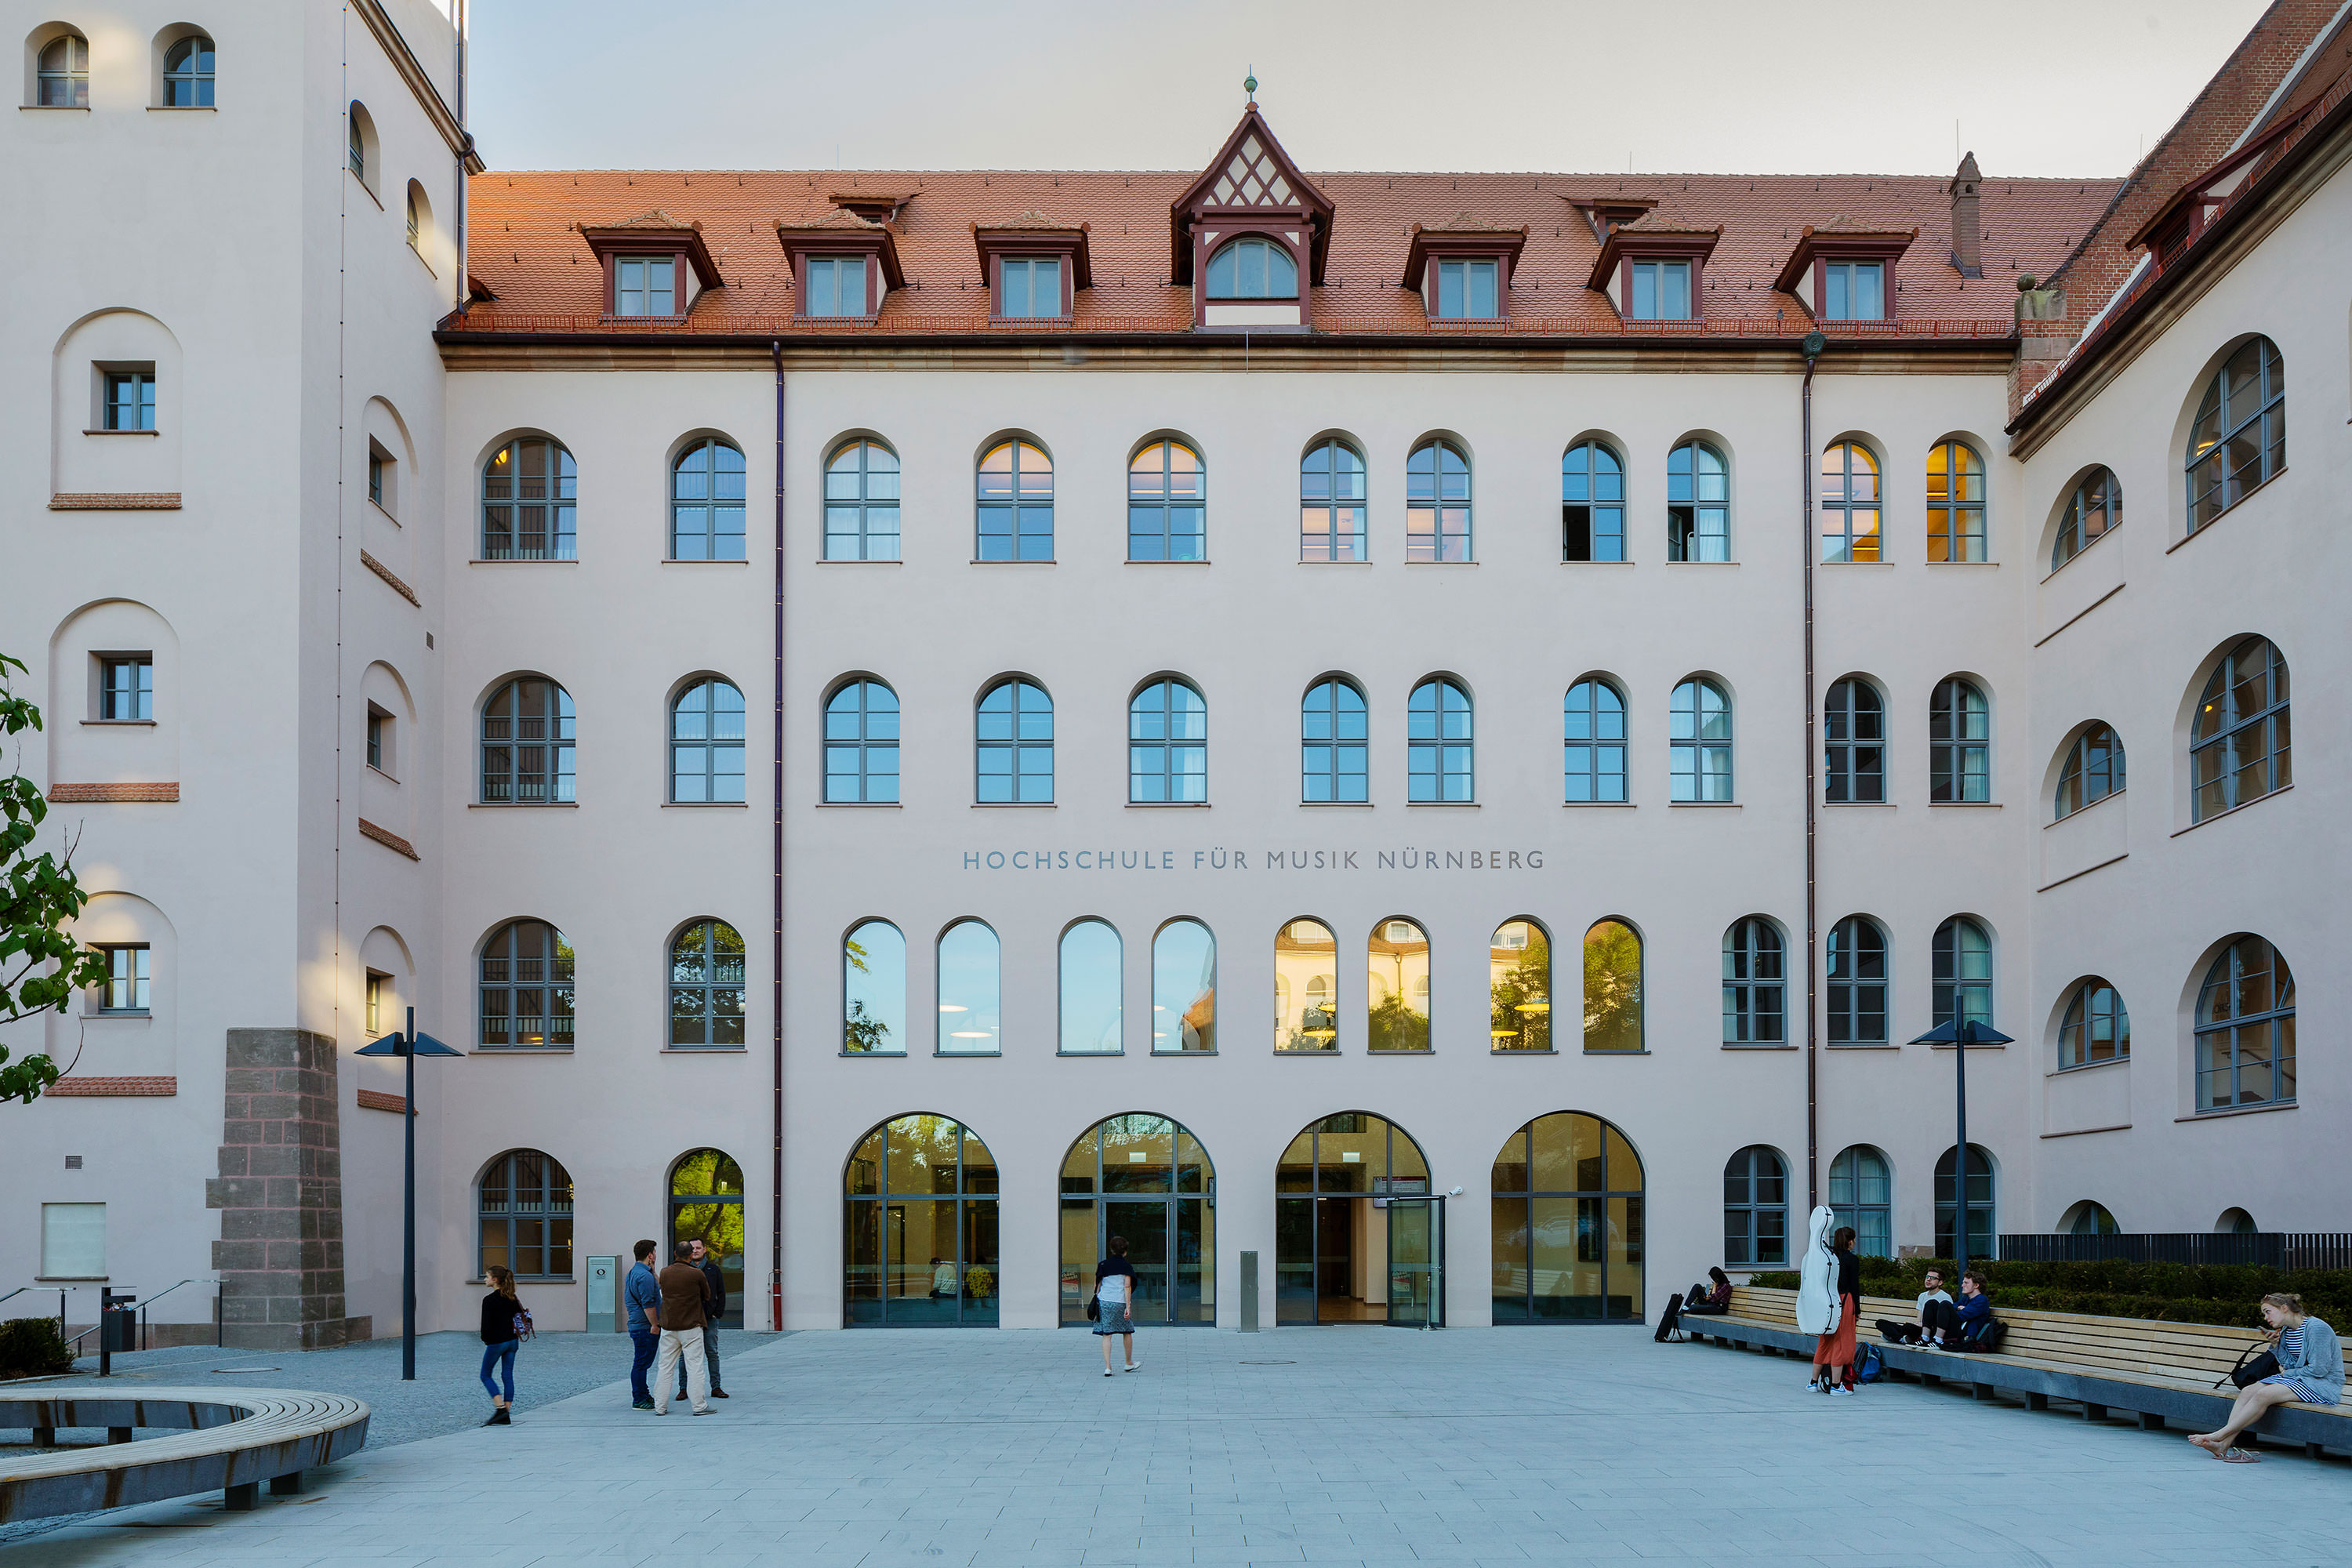 Hochschule für Musik Nürnberg